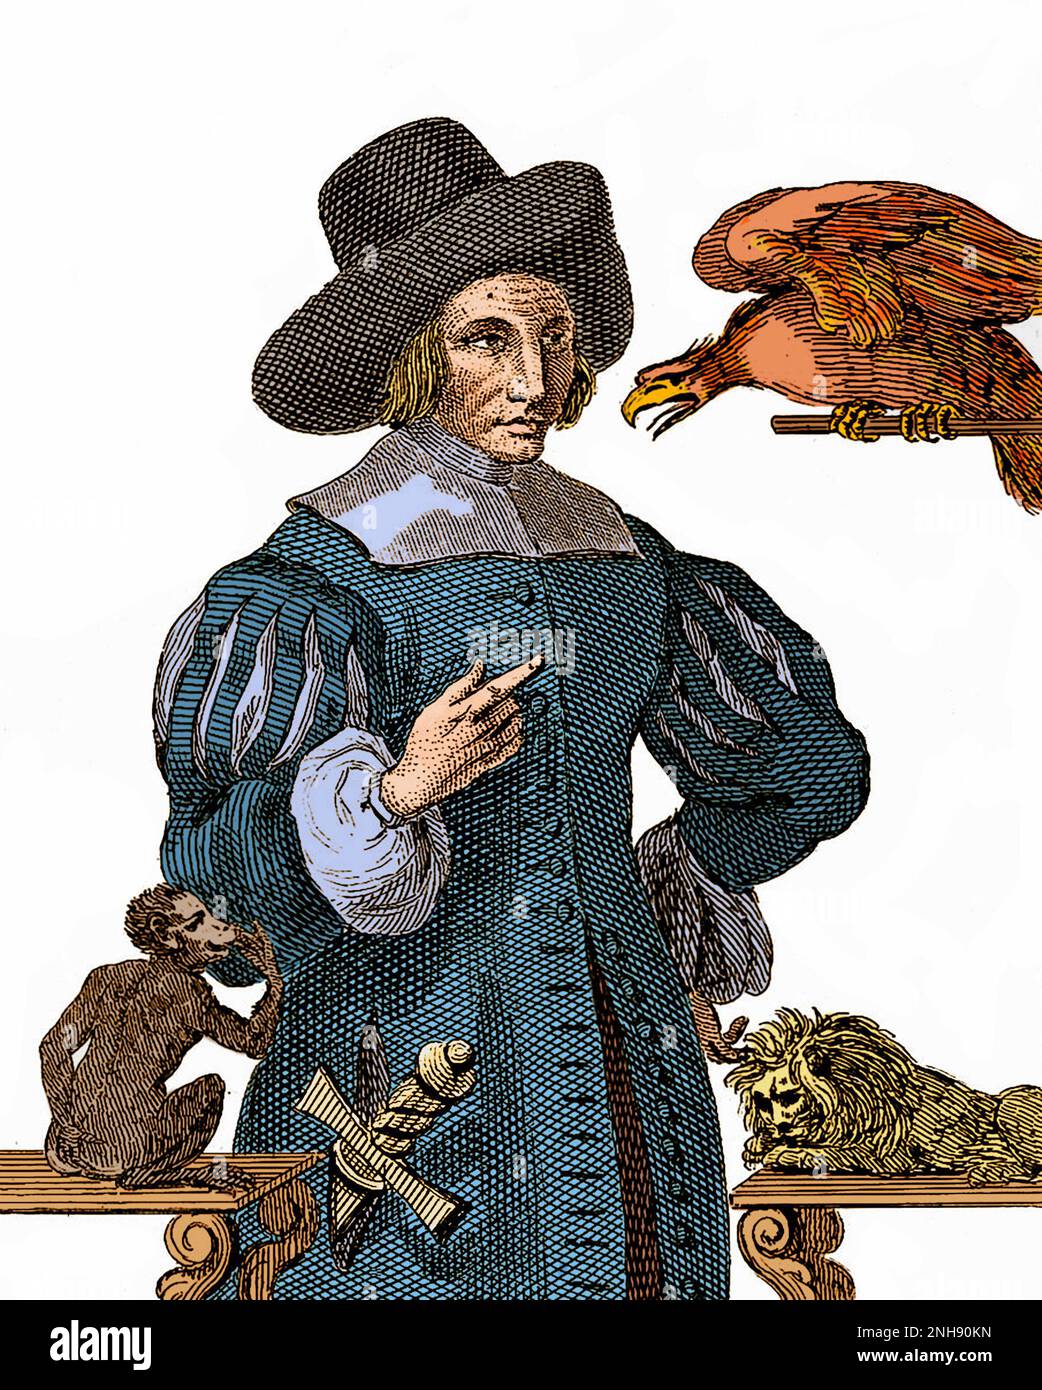 Mary Frith (ca. 1584-1659), auch bekannt als Moll (oder Mal) Cutpurse, war eine berüchtigte Taschendiebin und Zaun der Londoner Unterwelt. Sie trug Männerkleidung, behielt Papageien, züchtete Mastiffs und war die erste englische Frau, die bekannt war, zu rauchen. Mehrere Stücke über sie wurden zu ihrem Leben geschrieben. Das Leben von Mrs. Mary Frith, eine sensationalisierte Biografie, die drei Jahre nach ihrem Tod geschrieben wurde, half, sie zu mythologisieren. Aus der „Sammlung von 400 Porträts bemerkenswerter, exzentrischer und berüchtigter Persönlichkeiten“, ca. 1880. Gefärbt. Stockfoto